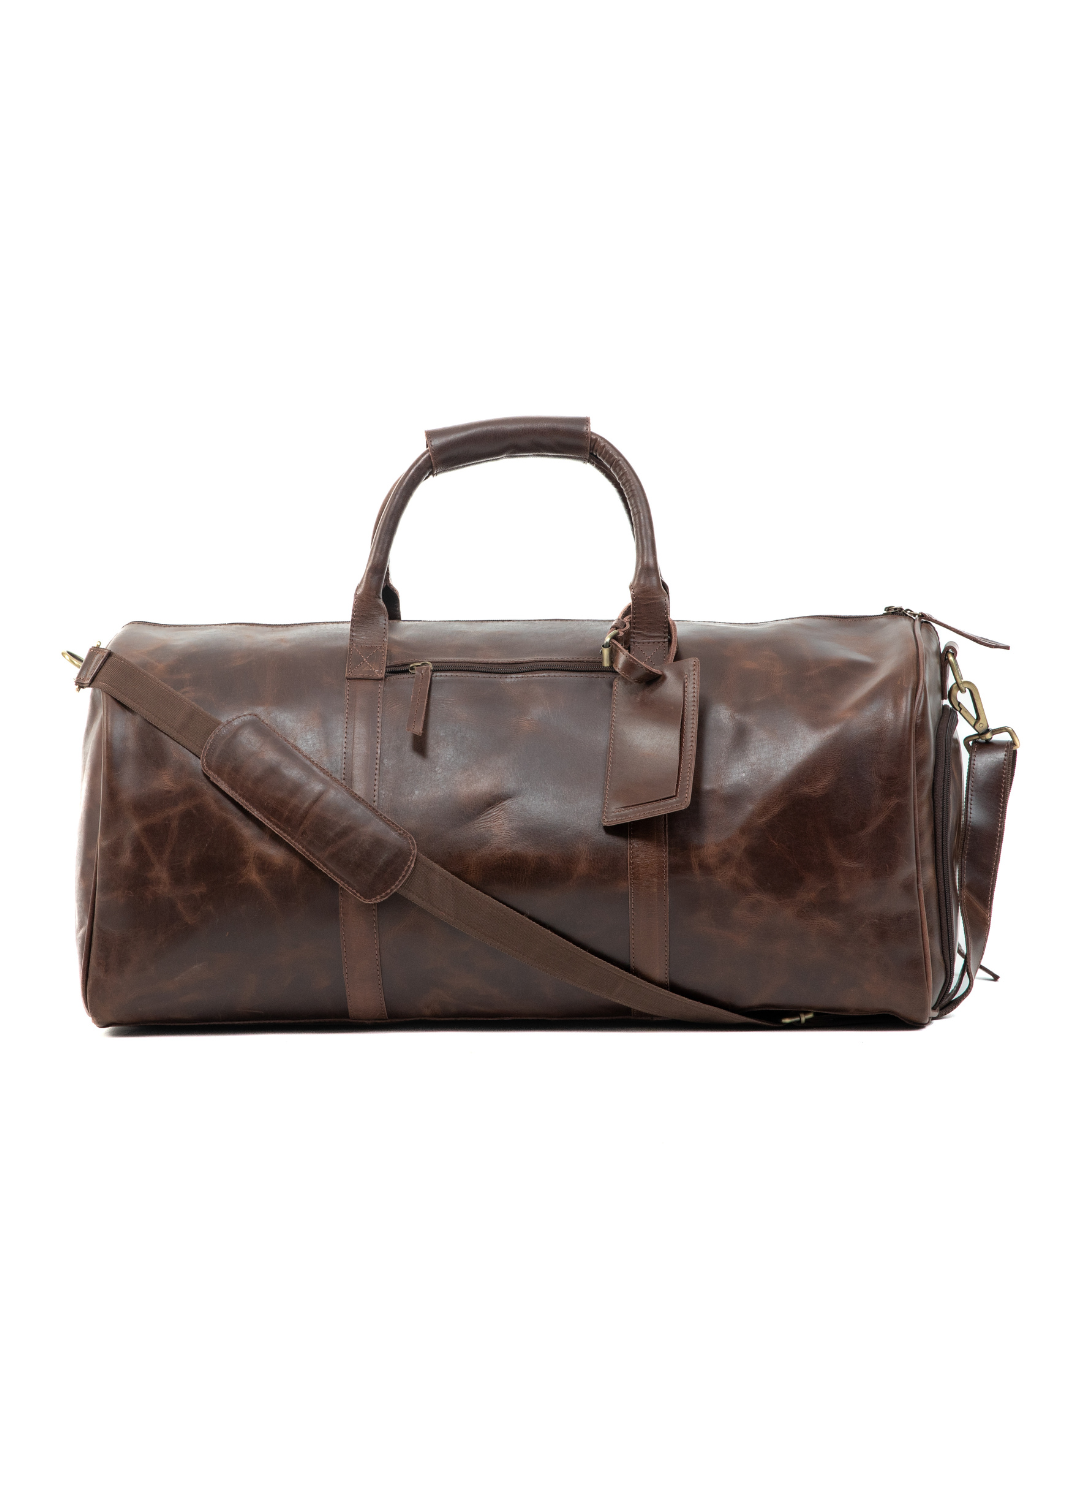 Leather Duffel Bag in Vintage Brown